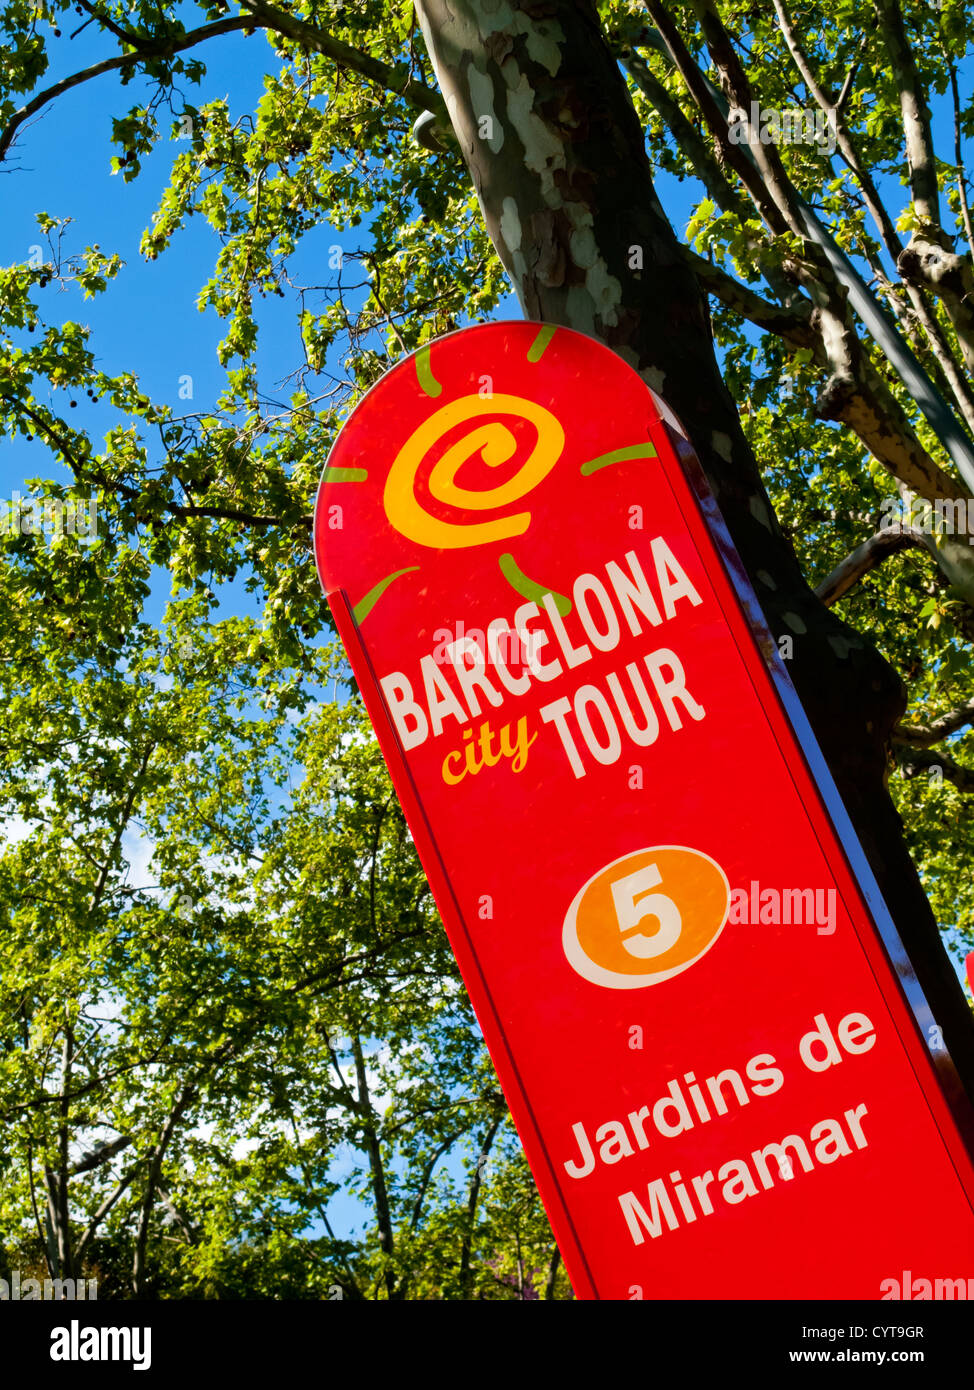 Bushaltestelle in Barcelona City Tour Touristenbus außerhalb des Jardins de Miramar Gärten Barcelona Spanien Stockfoto